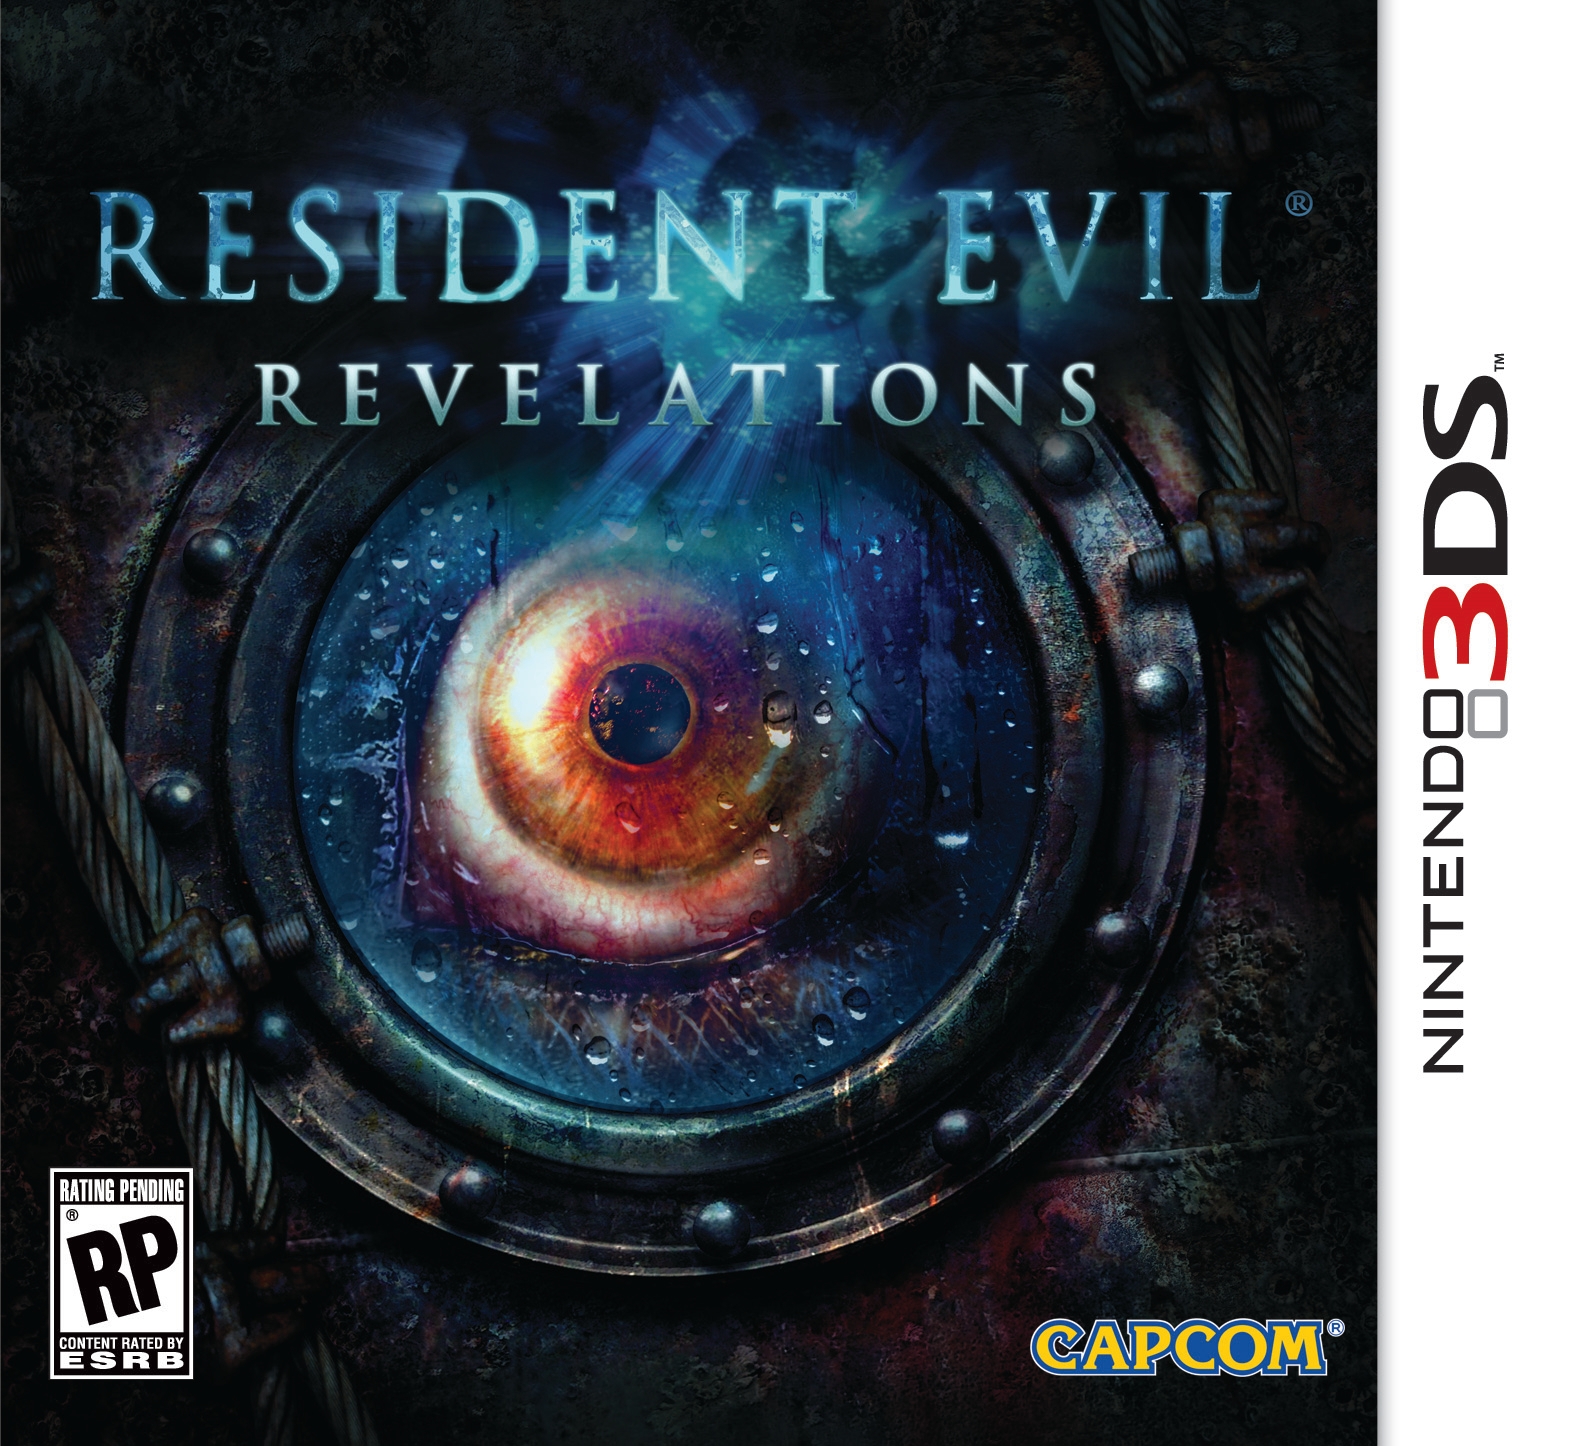 Resident Evil Revelations Arrives at Retailers February 7, 2012